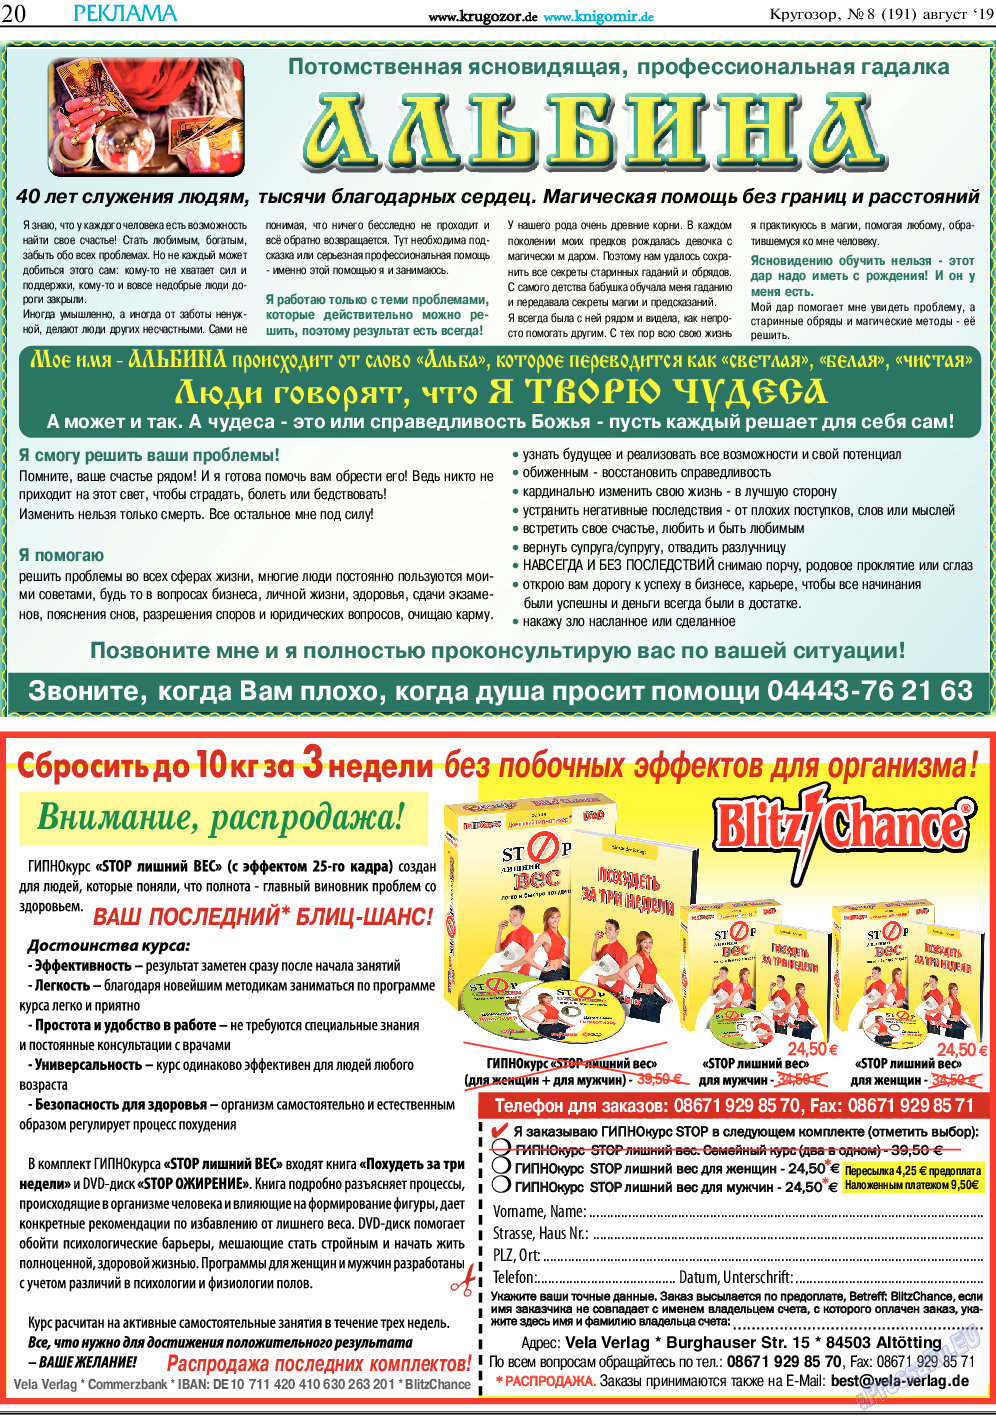 Кругозор, газета. 2019 №8 стр.20